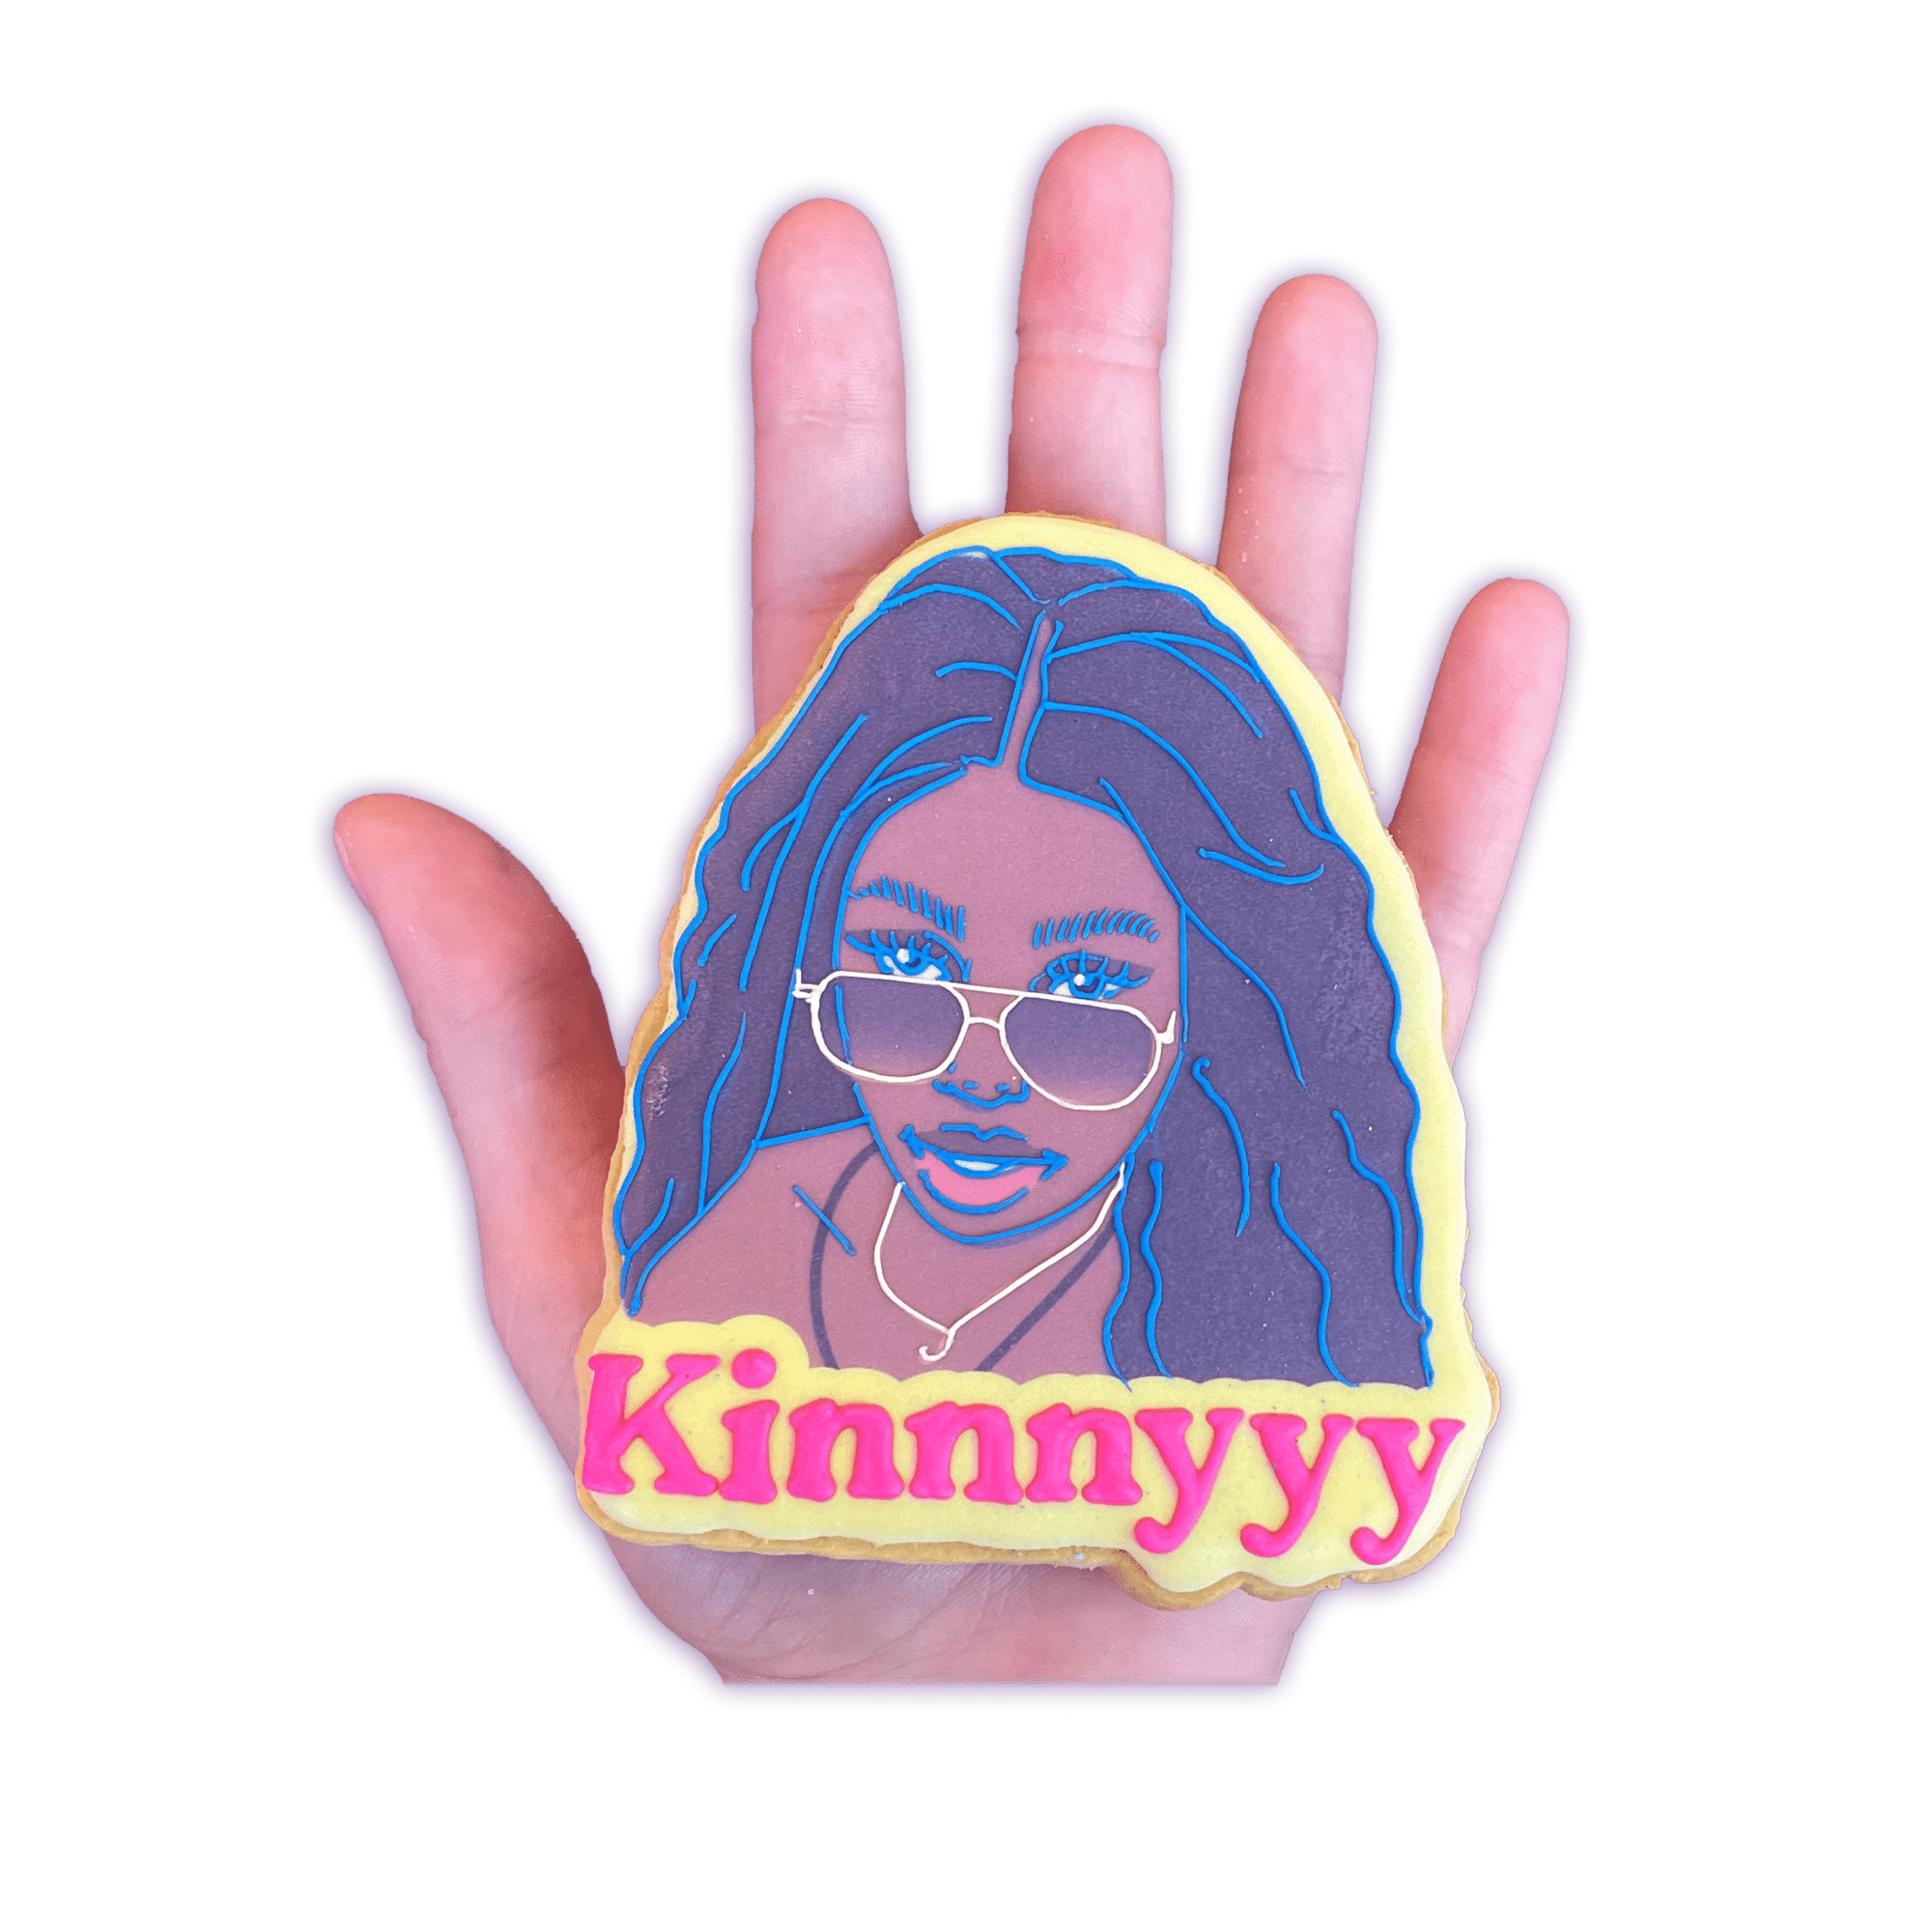 Kinnnyyy - Funny Face Bakery